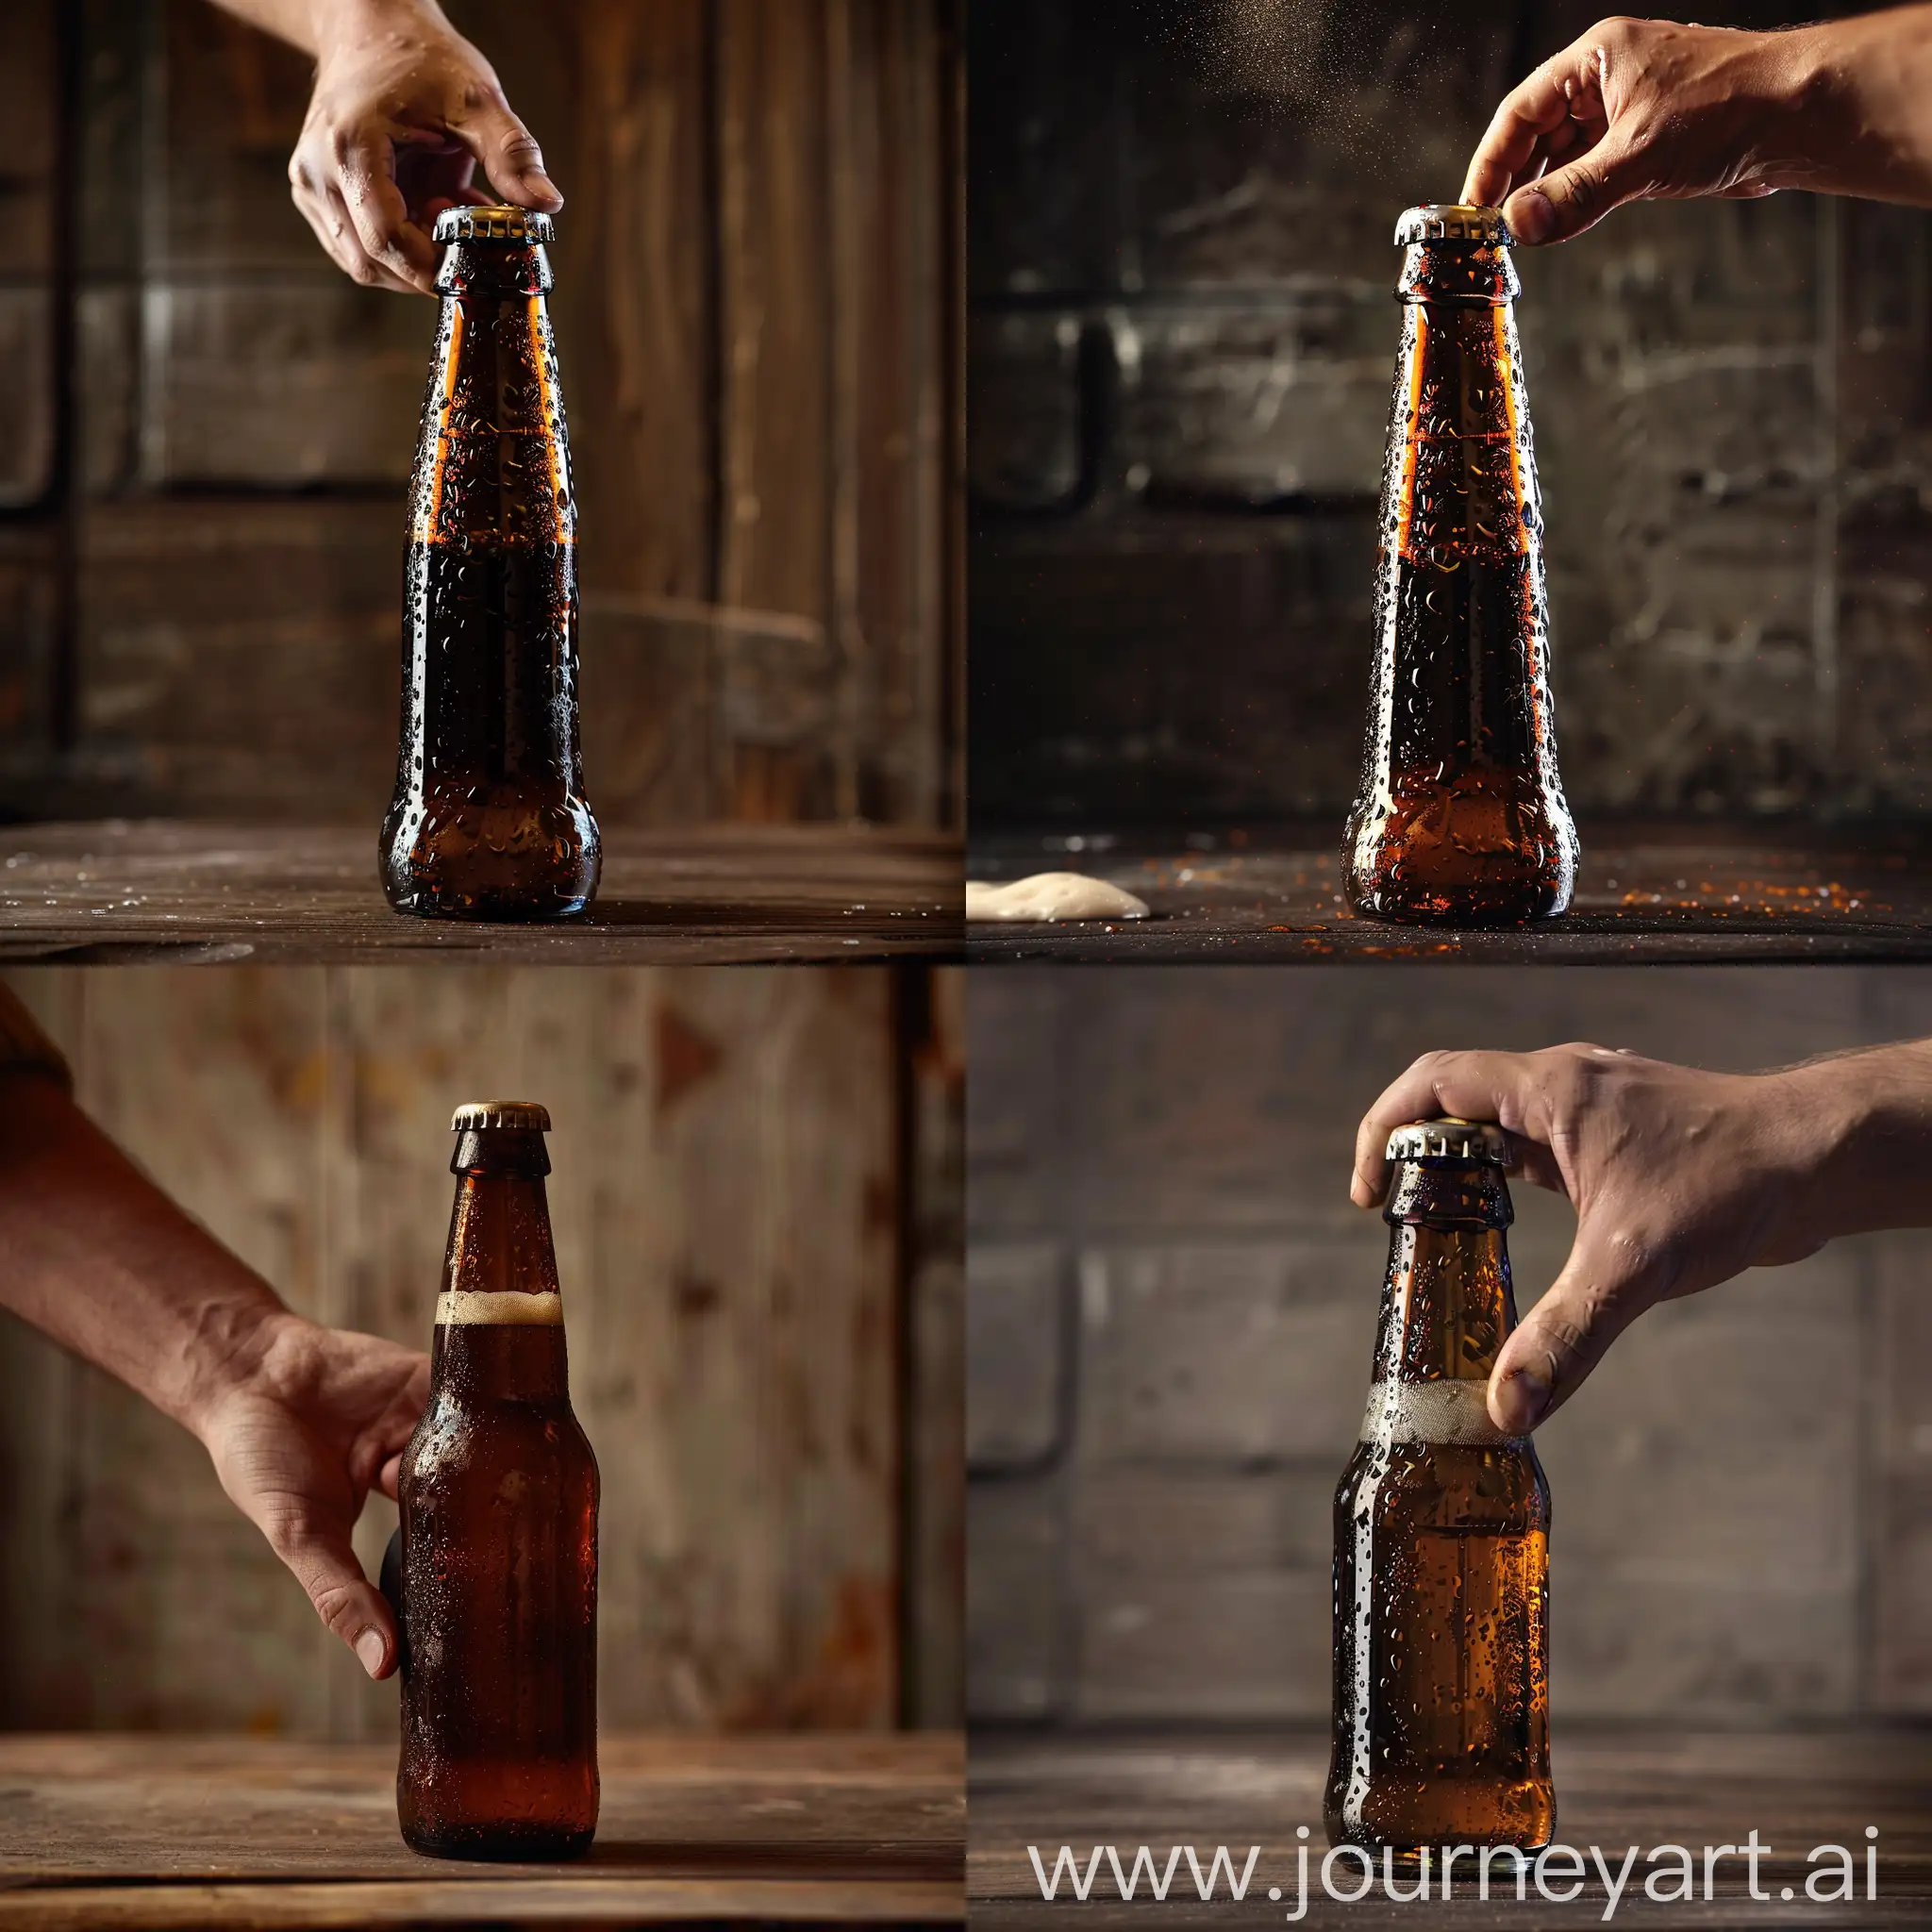 Hand-Opening-Beer-Bottle